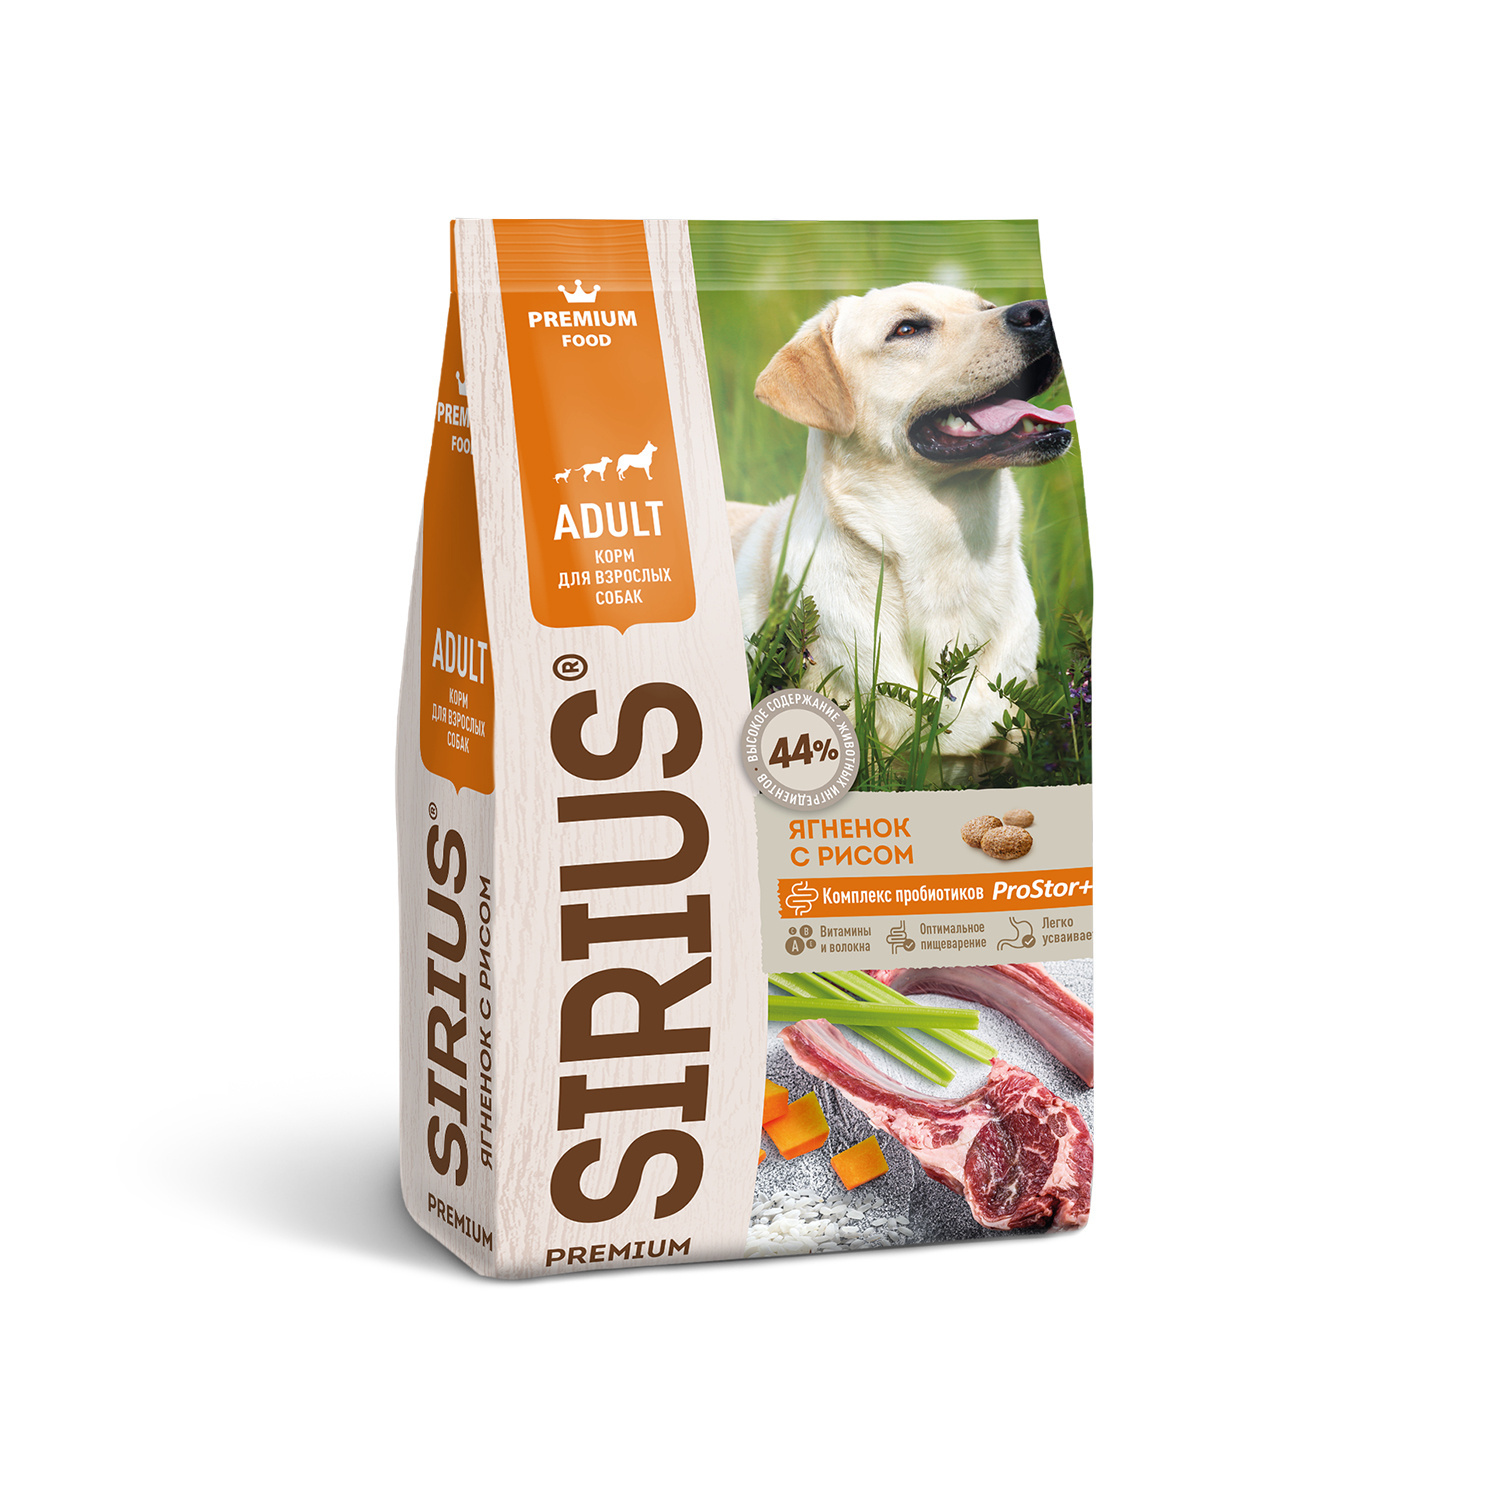 Sirius Sirius сухой корм для собак, ягненок и рис (15 кг) sirius sirius сухой корм для щенков и молодых собак ягненок с рисом 15 кг